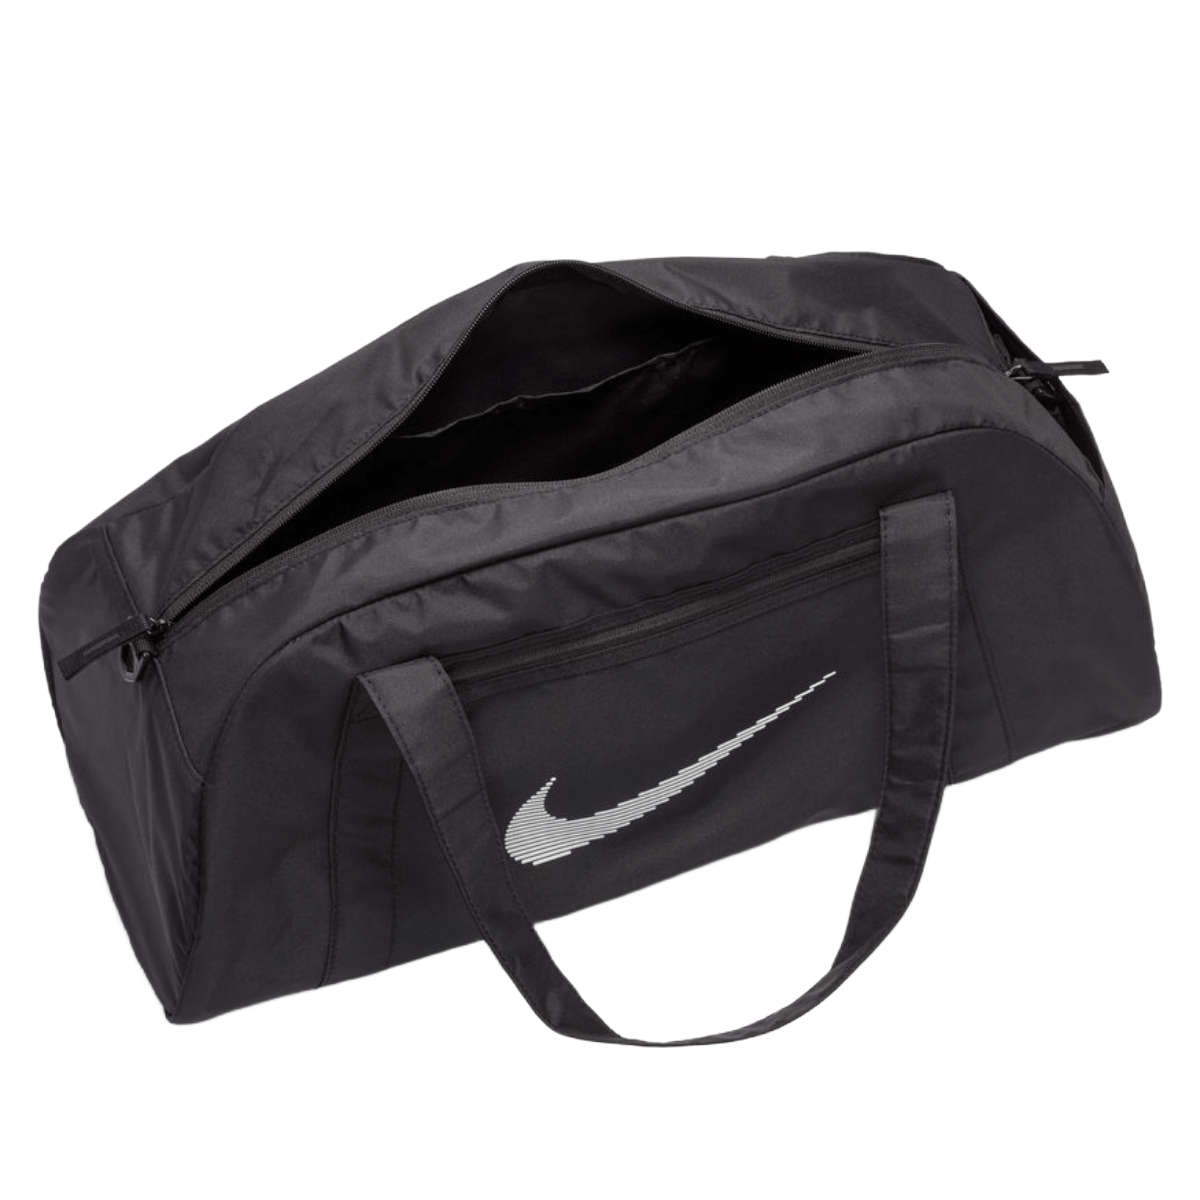 Nike Women's Gym Club 2.0 Bag